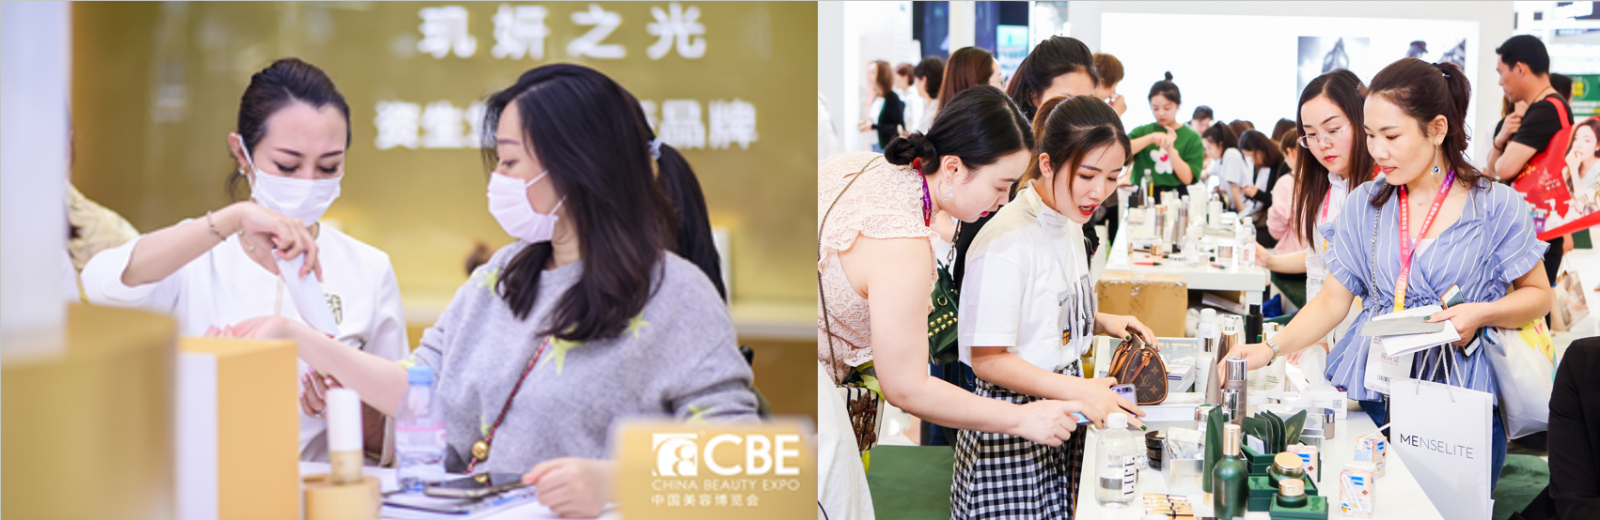 2022第27届CBE中国美容博览会